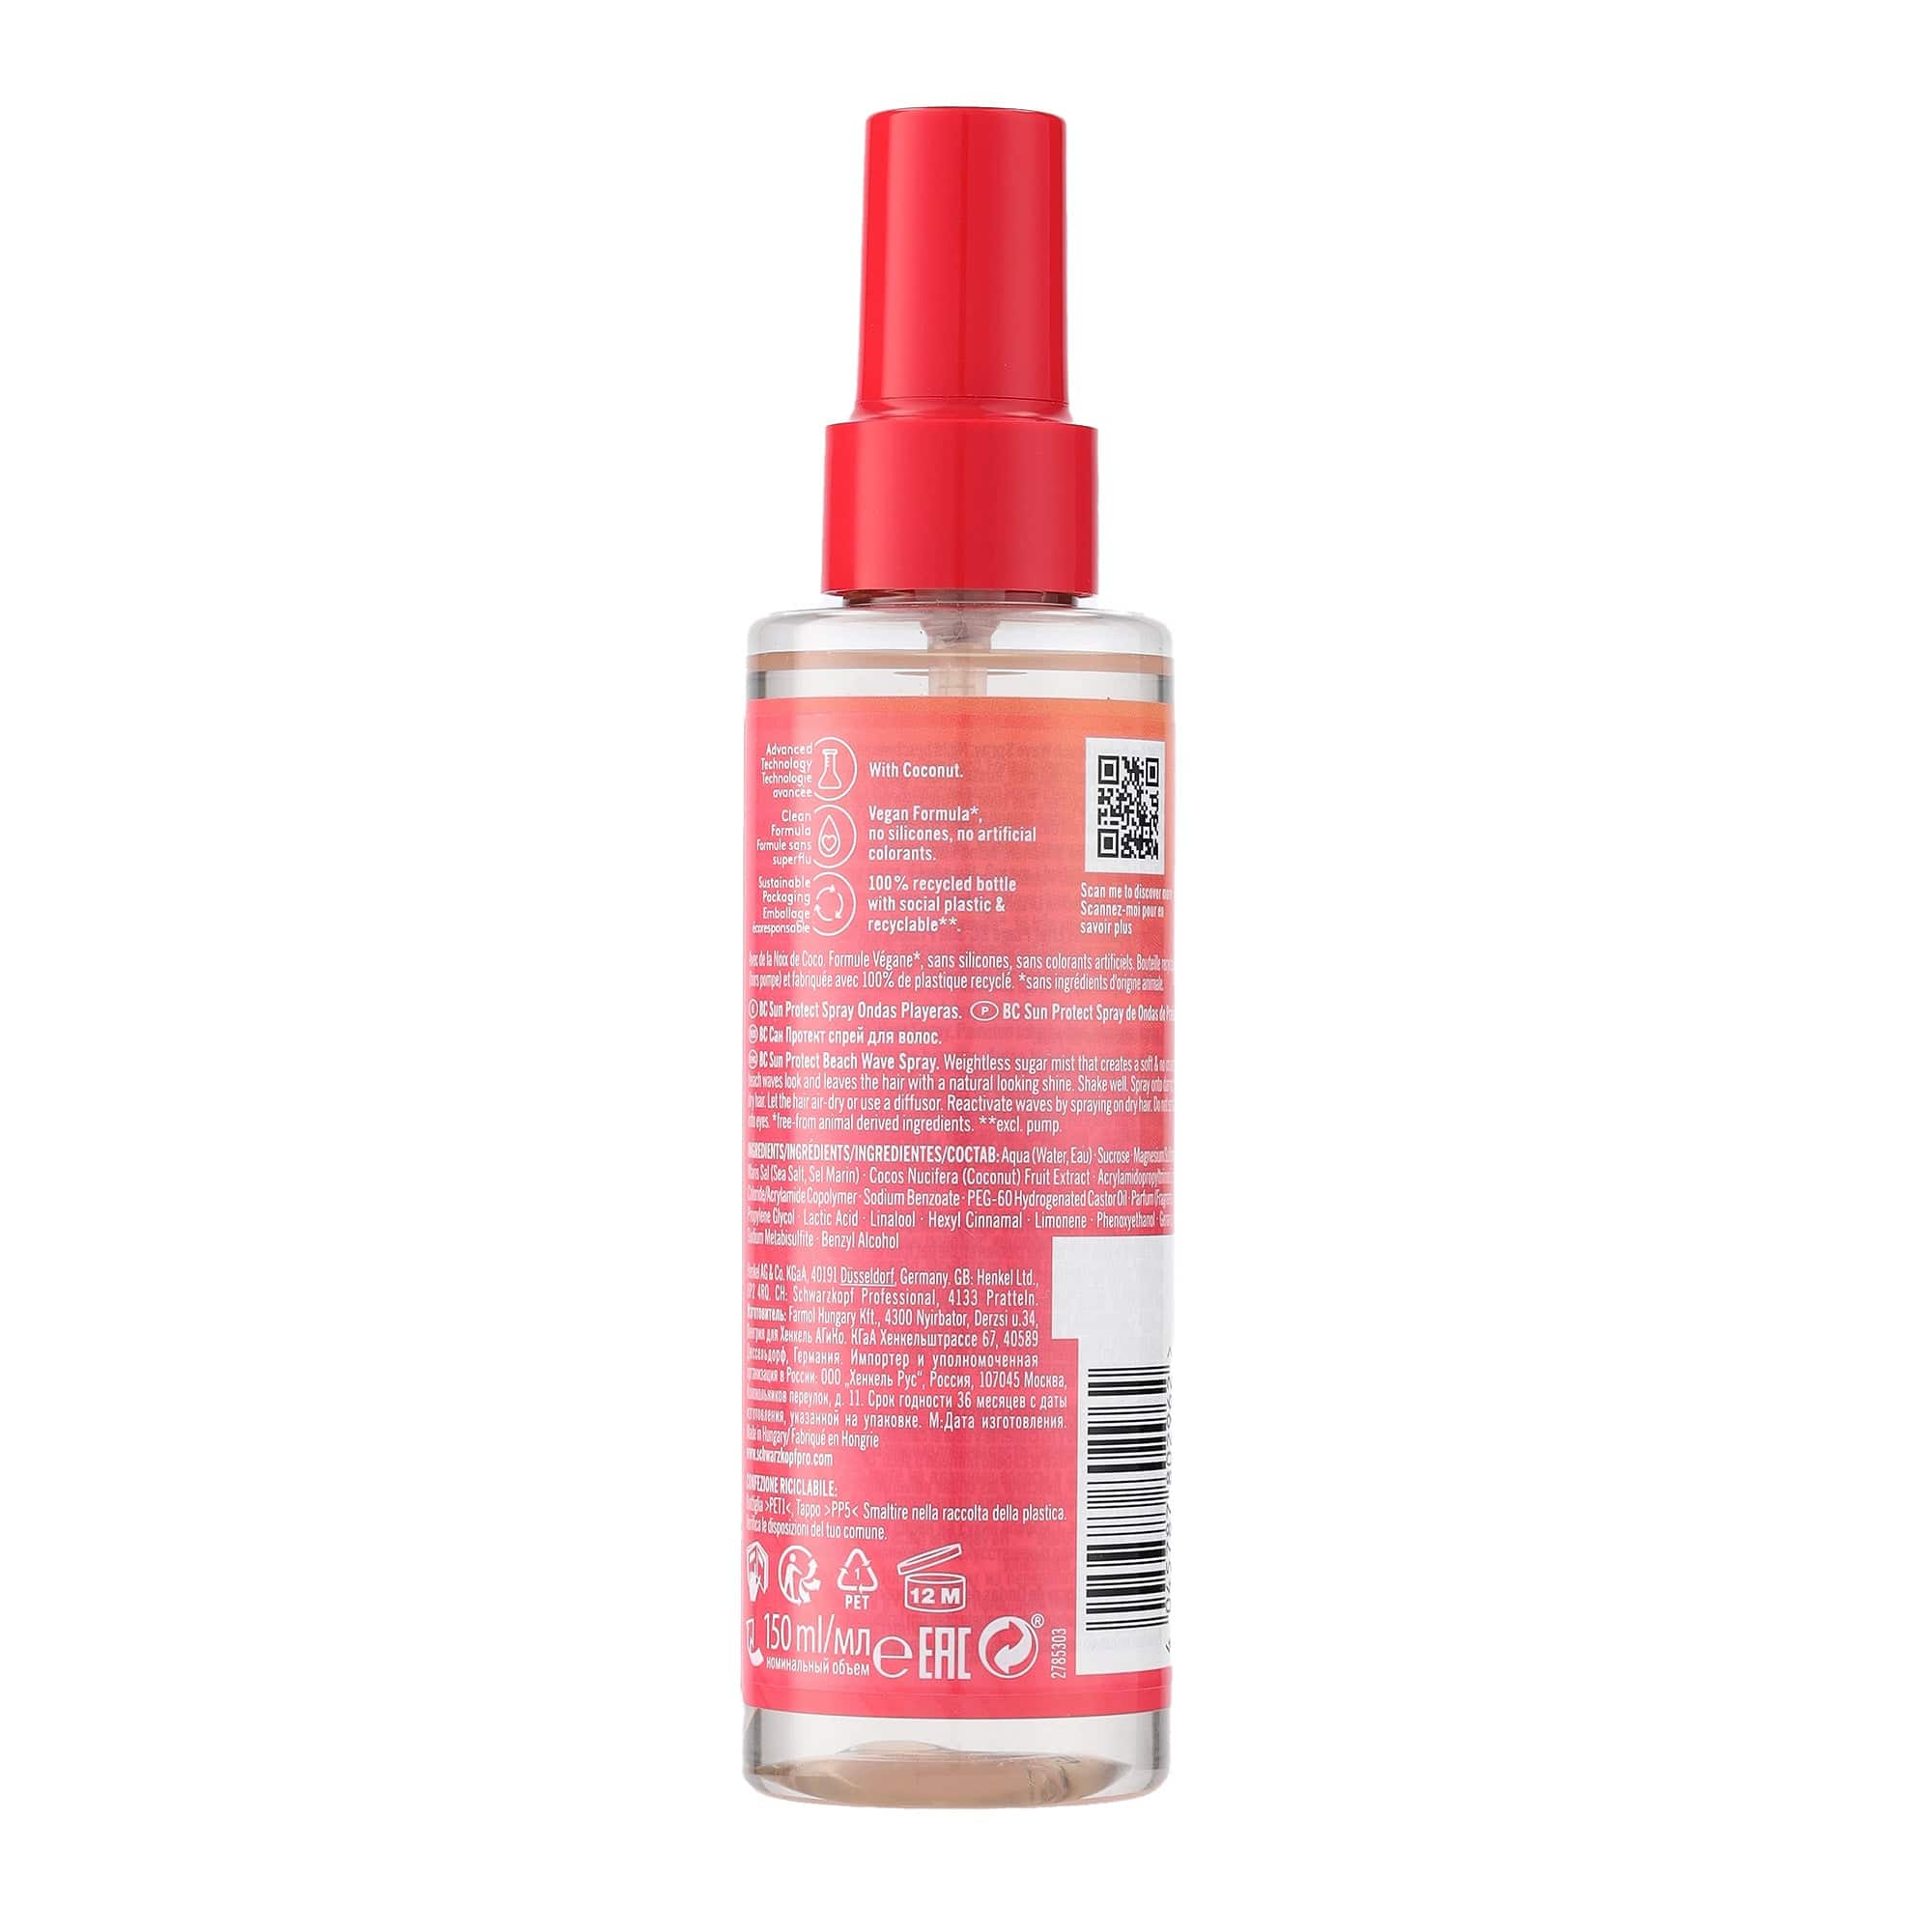 Bonacure Tratamiento Bonacure Sun Protect Spray Para Ondas de Playa 150ml Roberta Beauty Club Tienda Online Productos de Peluqueria